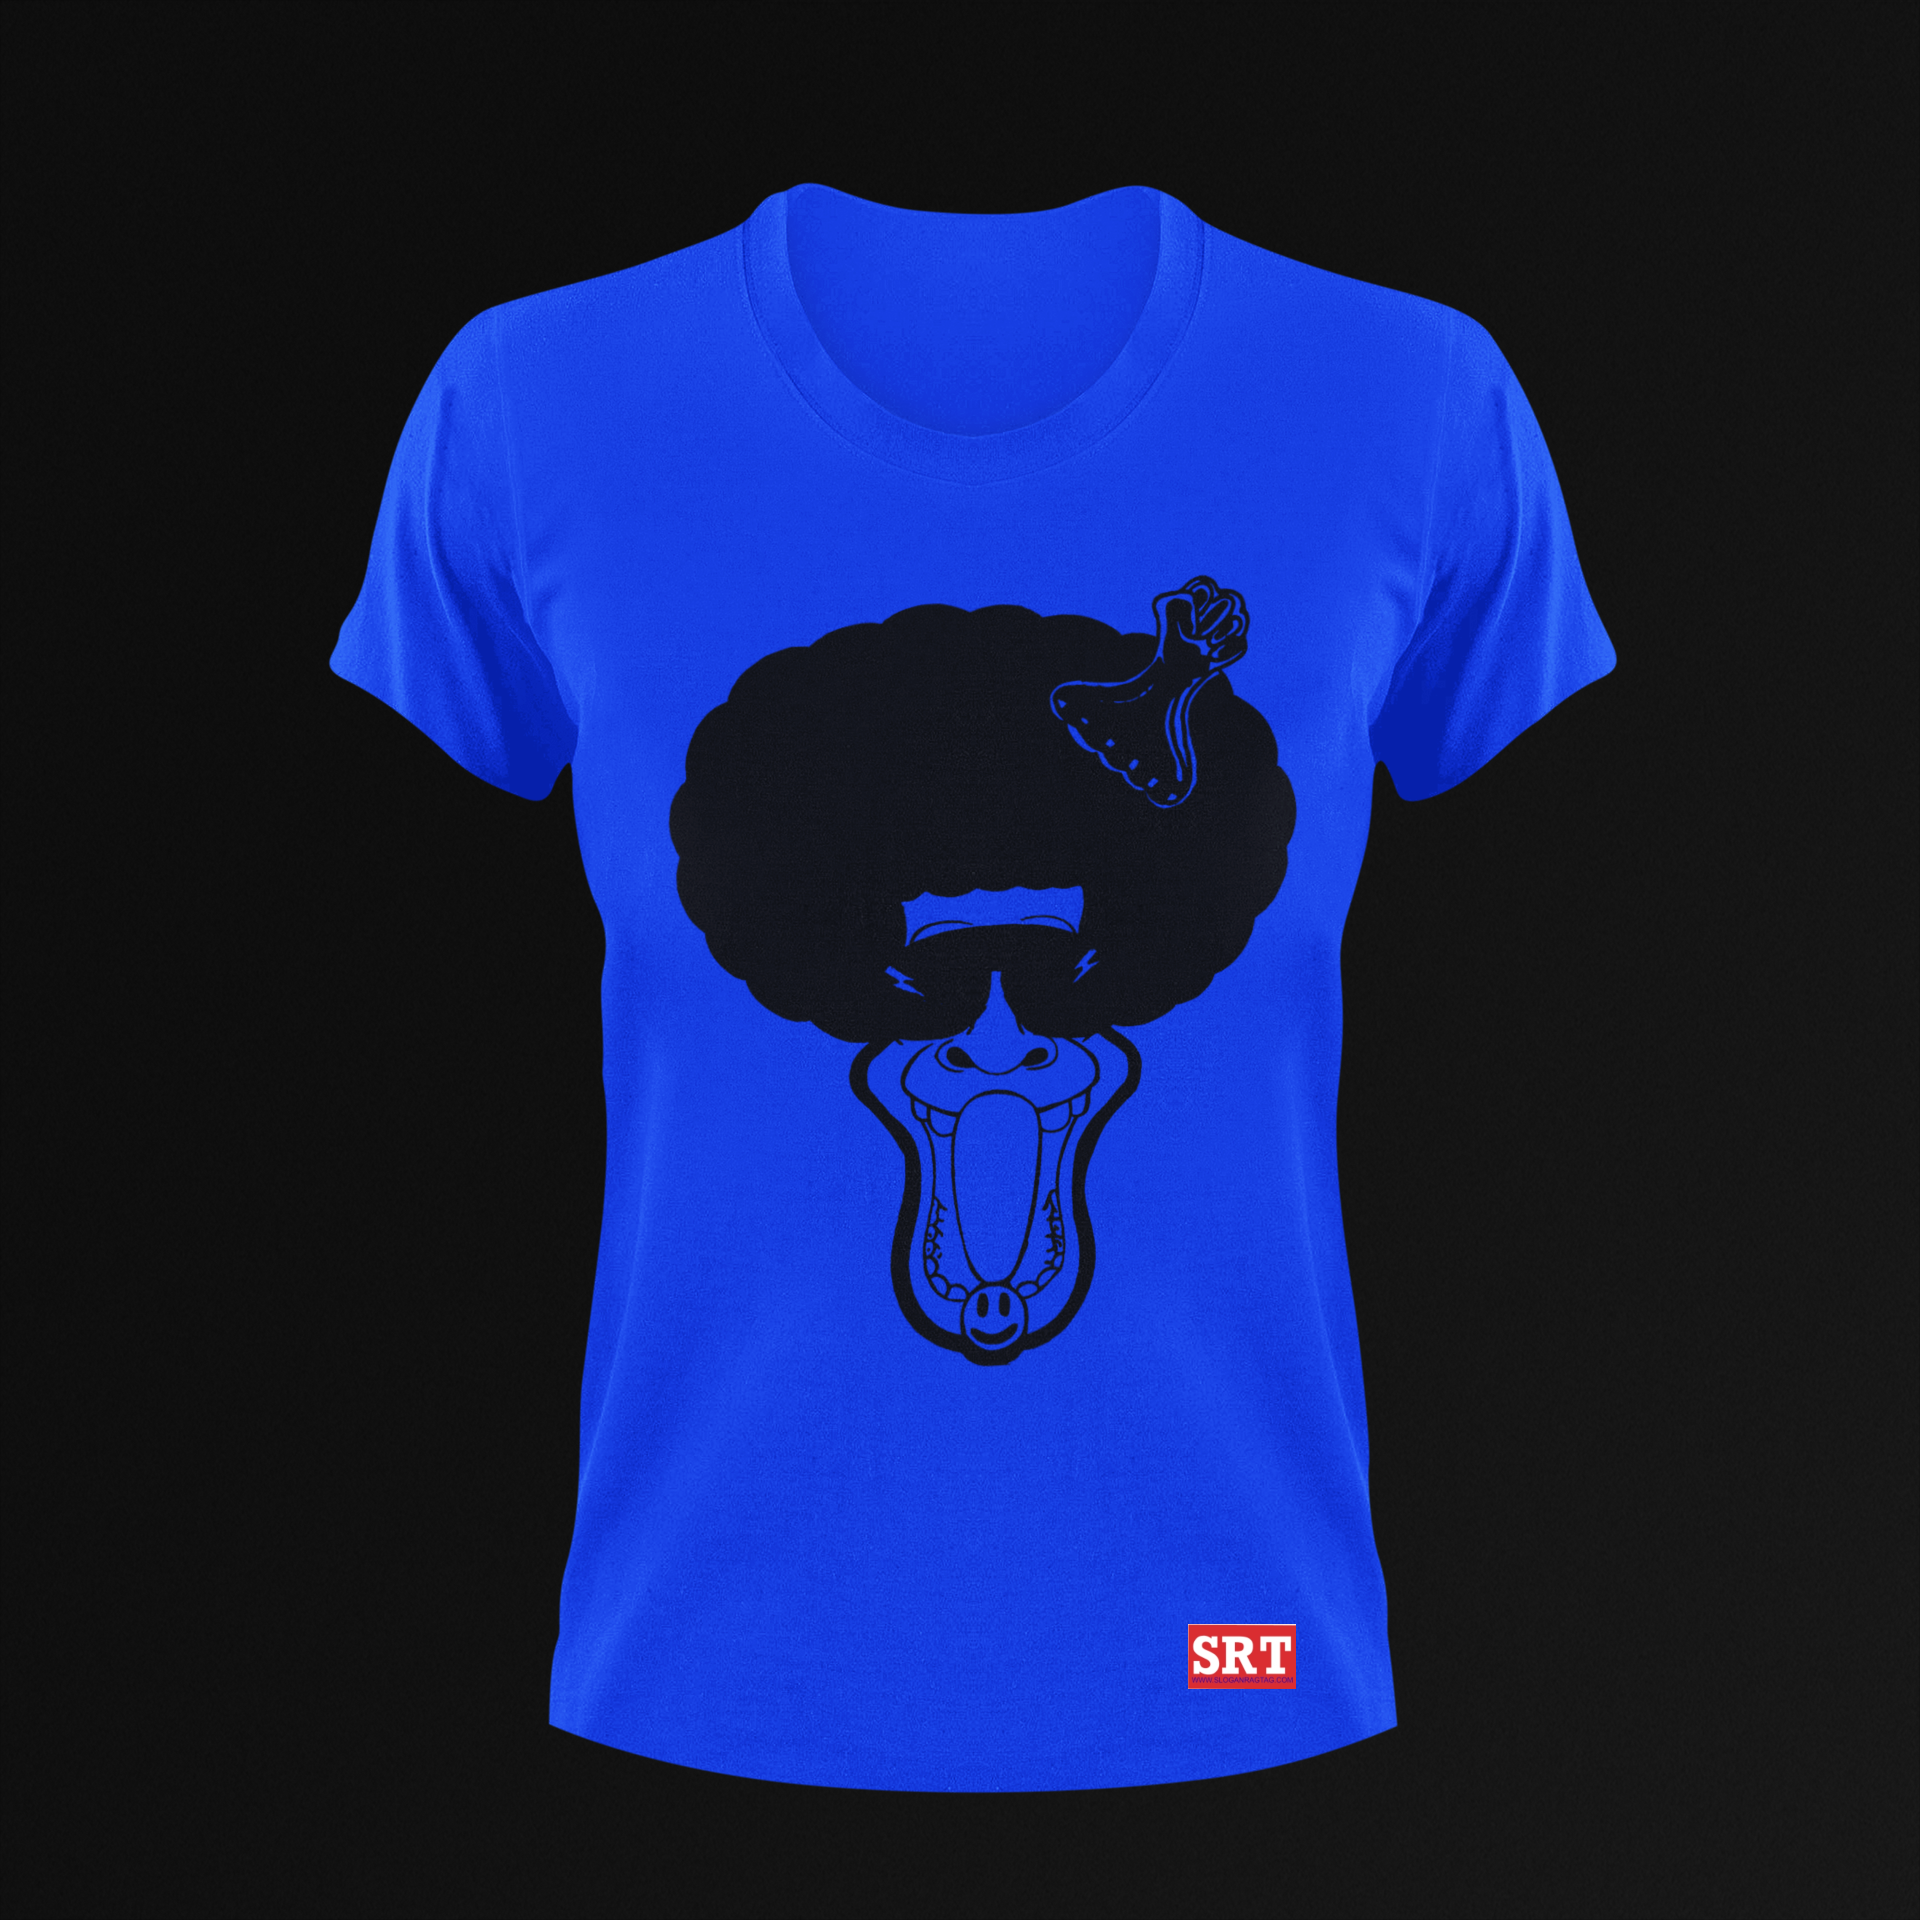 Afro Sloga Men's-T-shirt